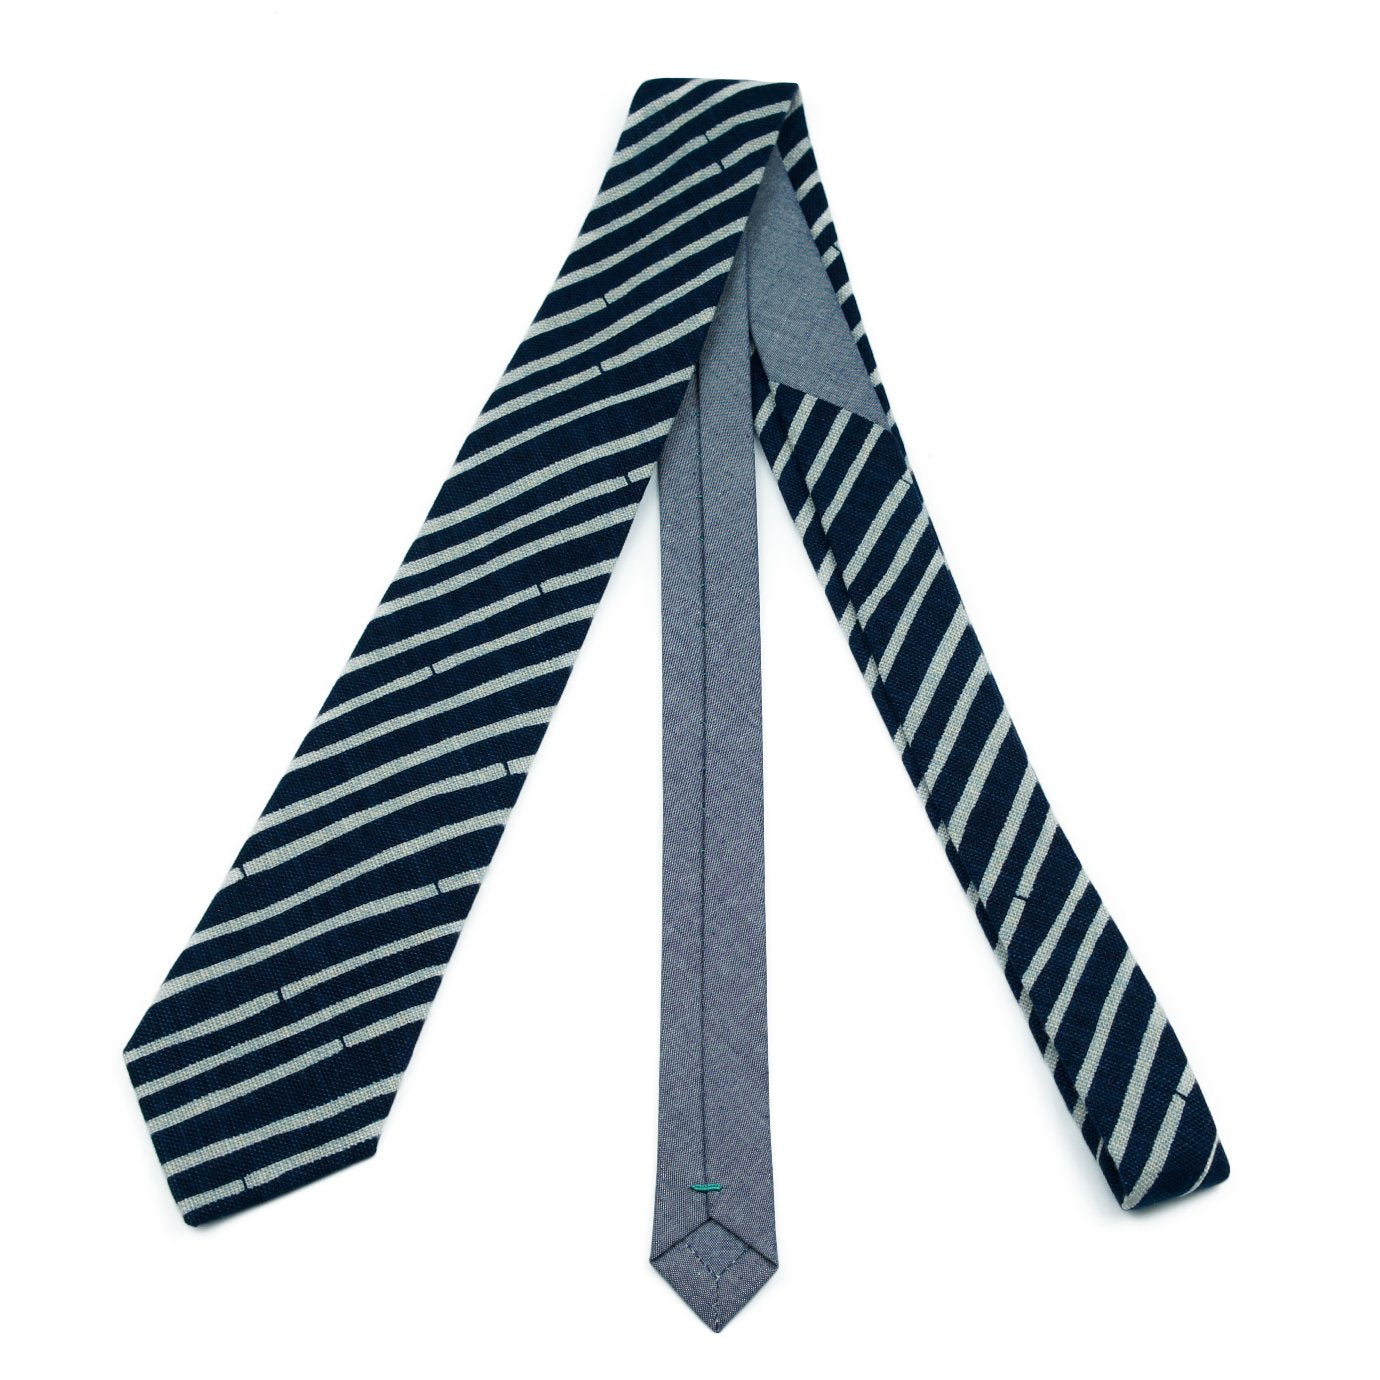 Krawatte // Dunkelblau Weiß Gestreift & Graublau Chambray // Breite Bold